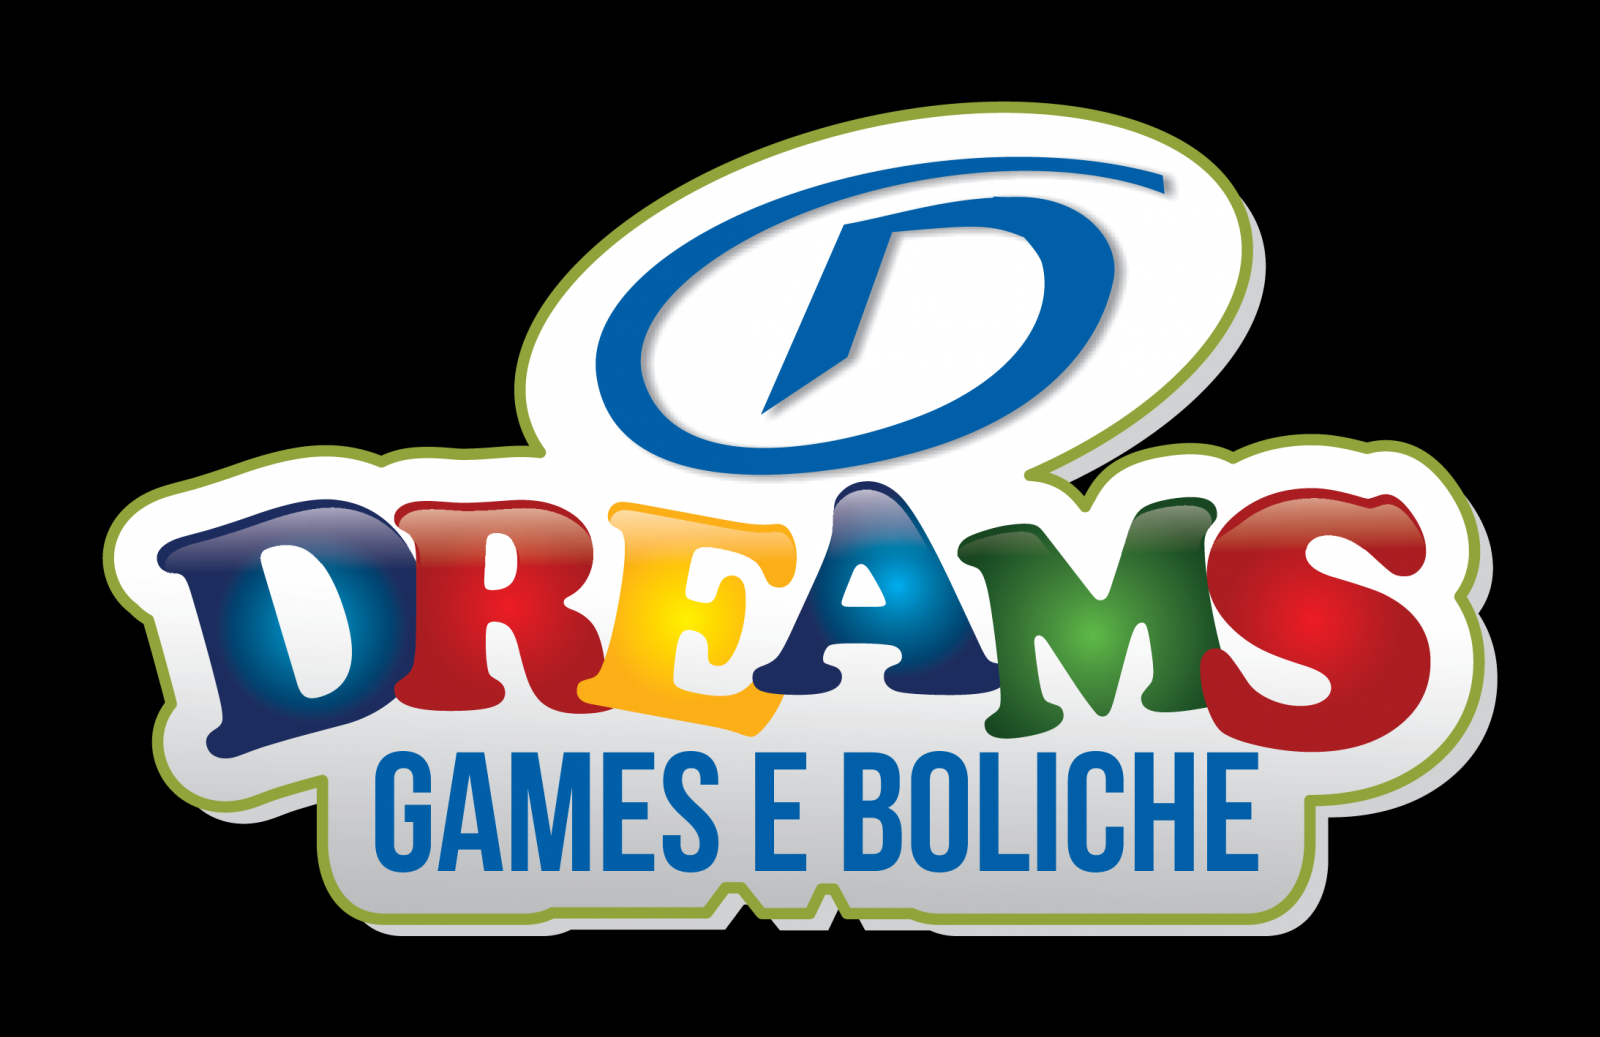 DREAMS GAMES E BOLICHE - Shopping Jardim das Américas